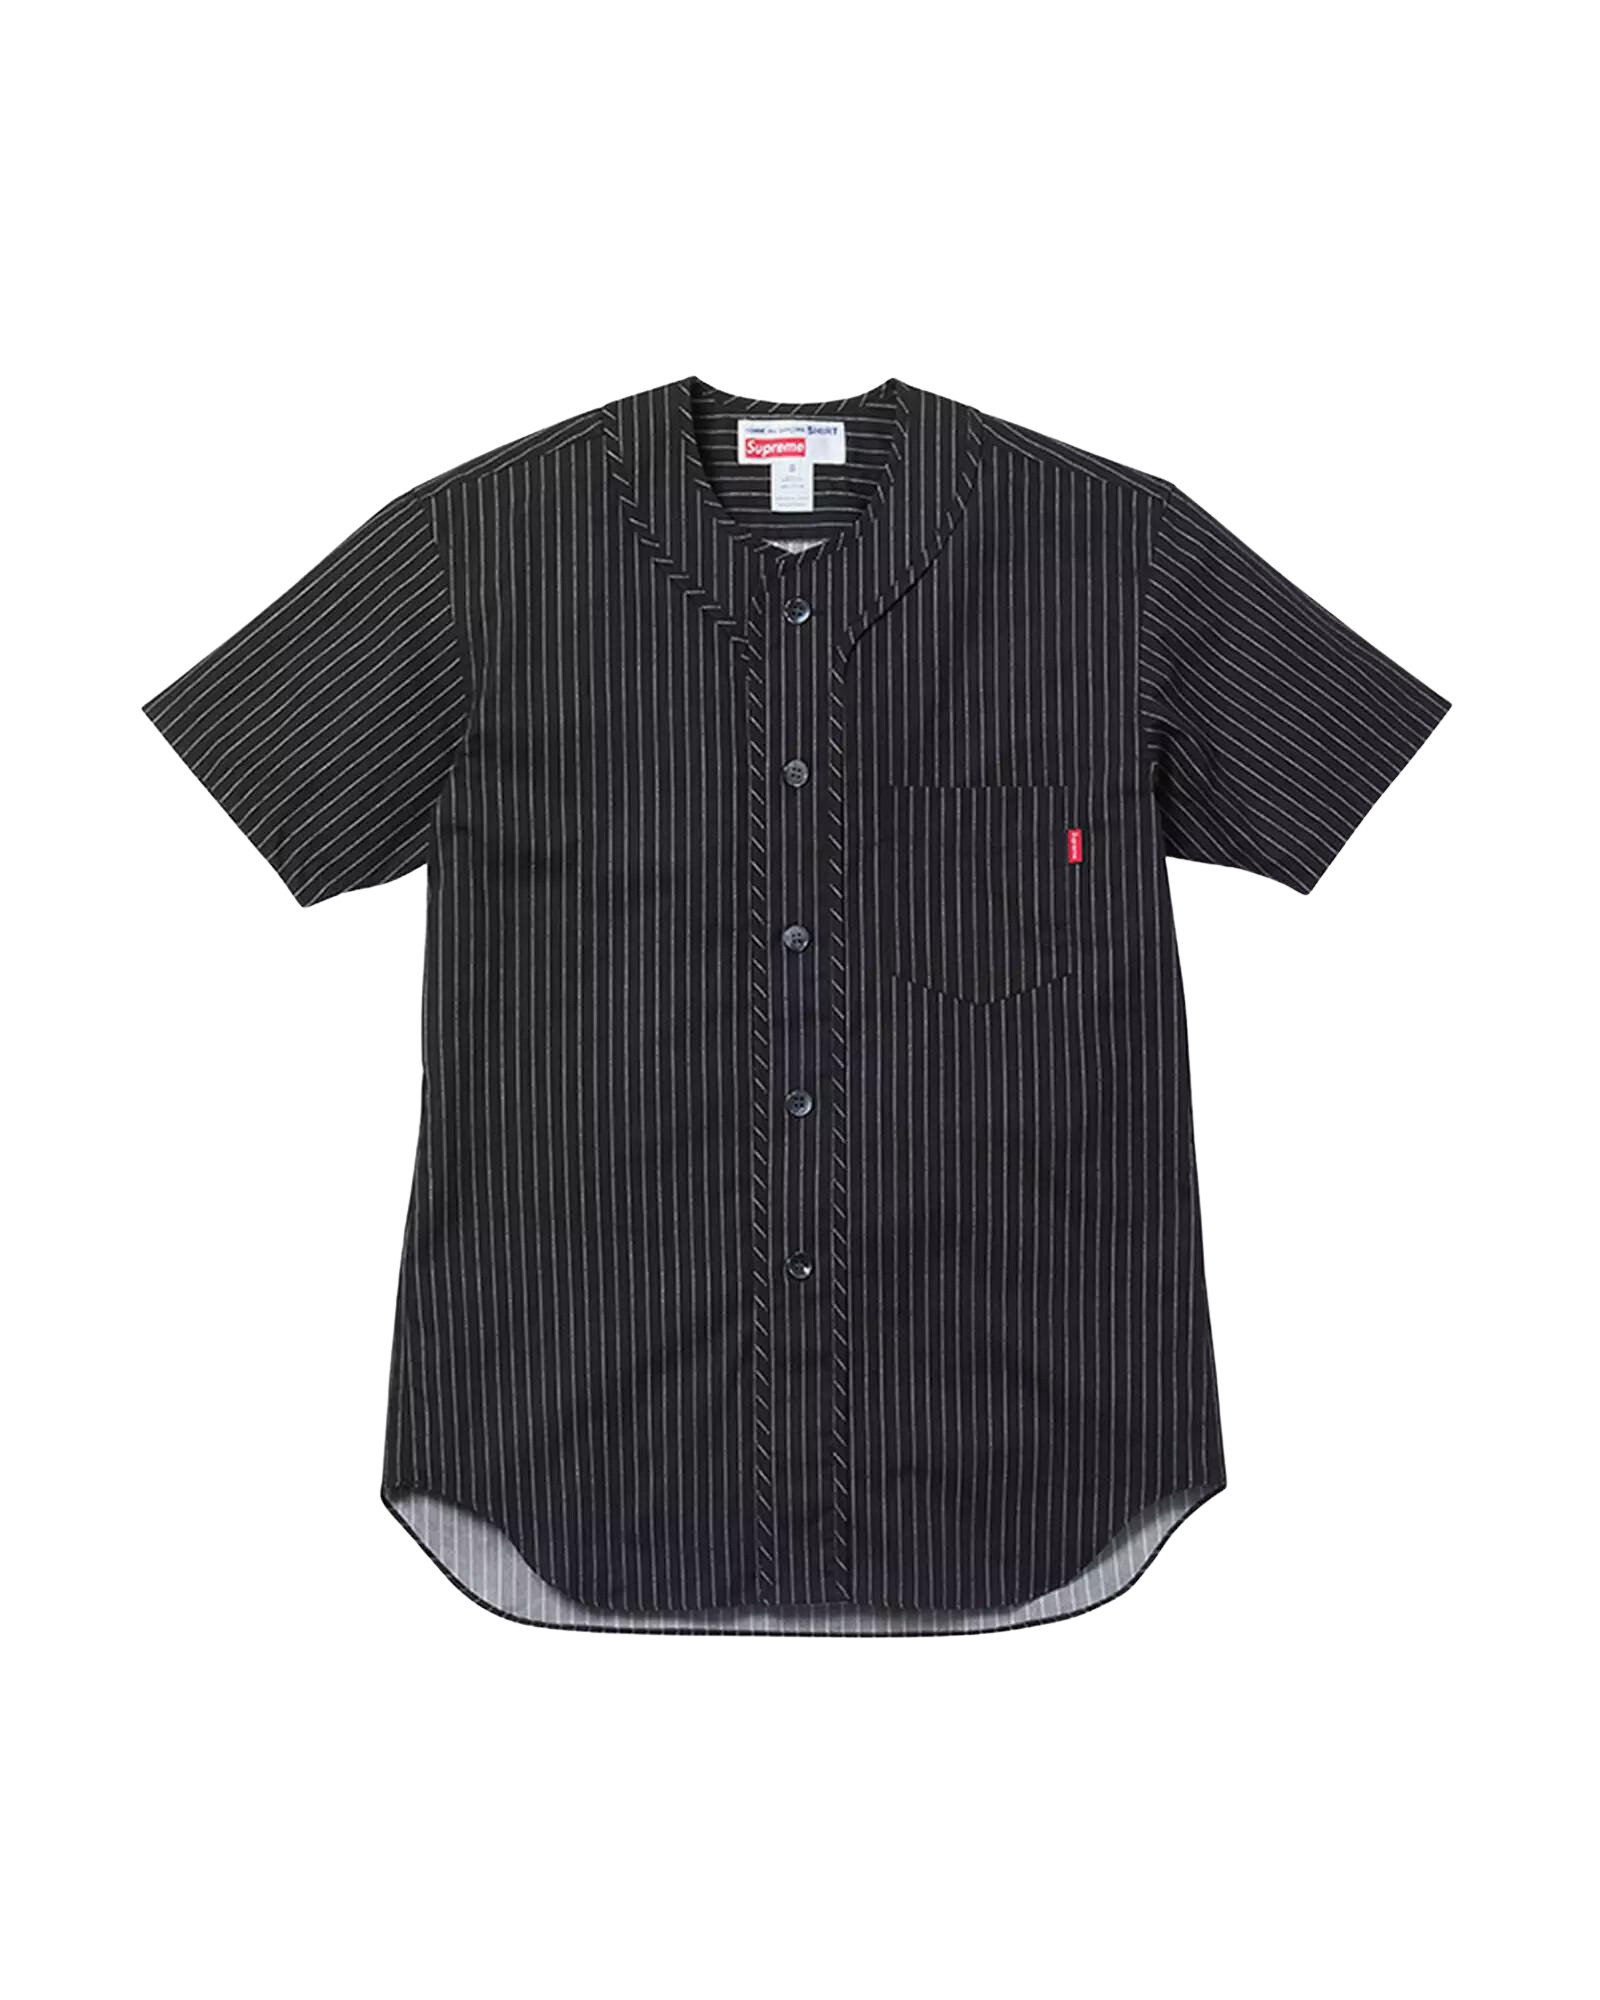 Supreme Poplin Short Sleeve Shirt Black